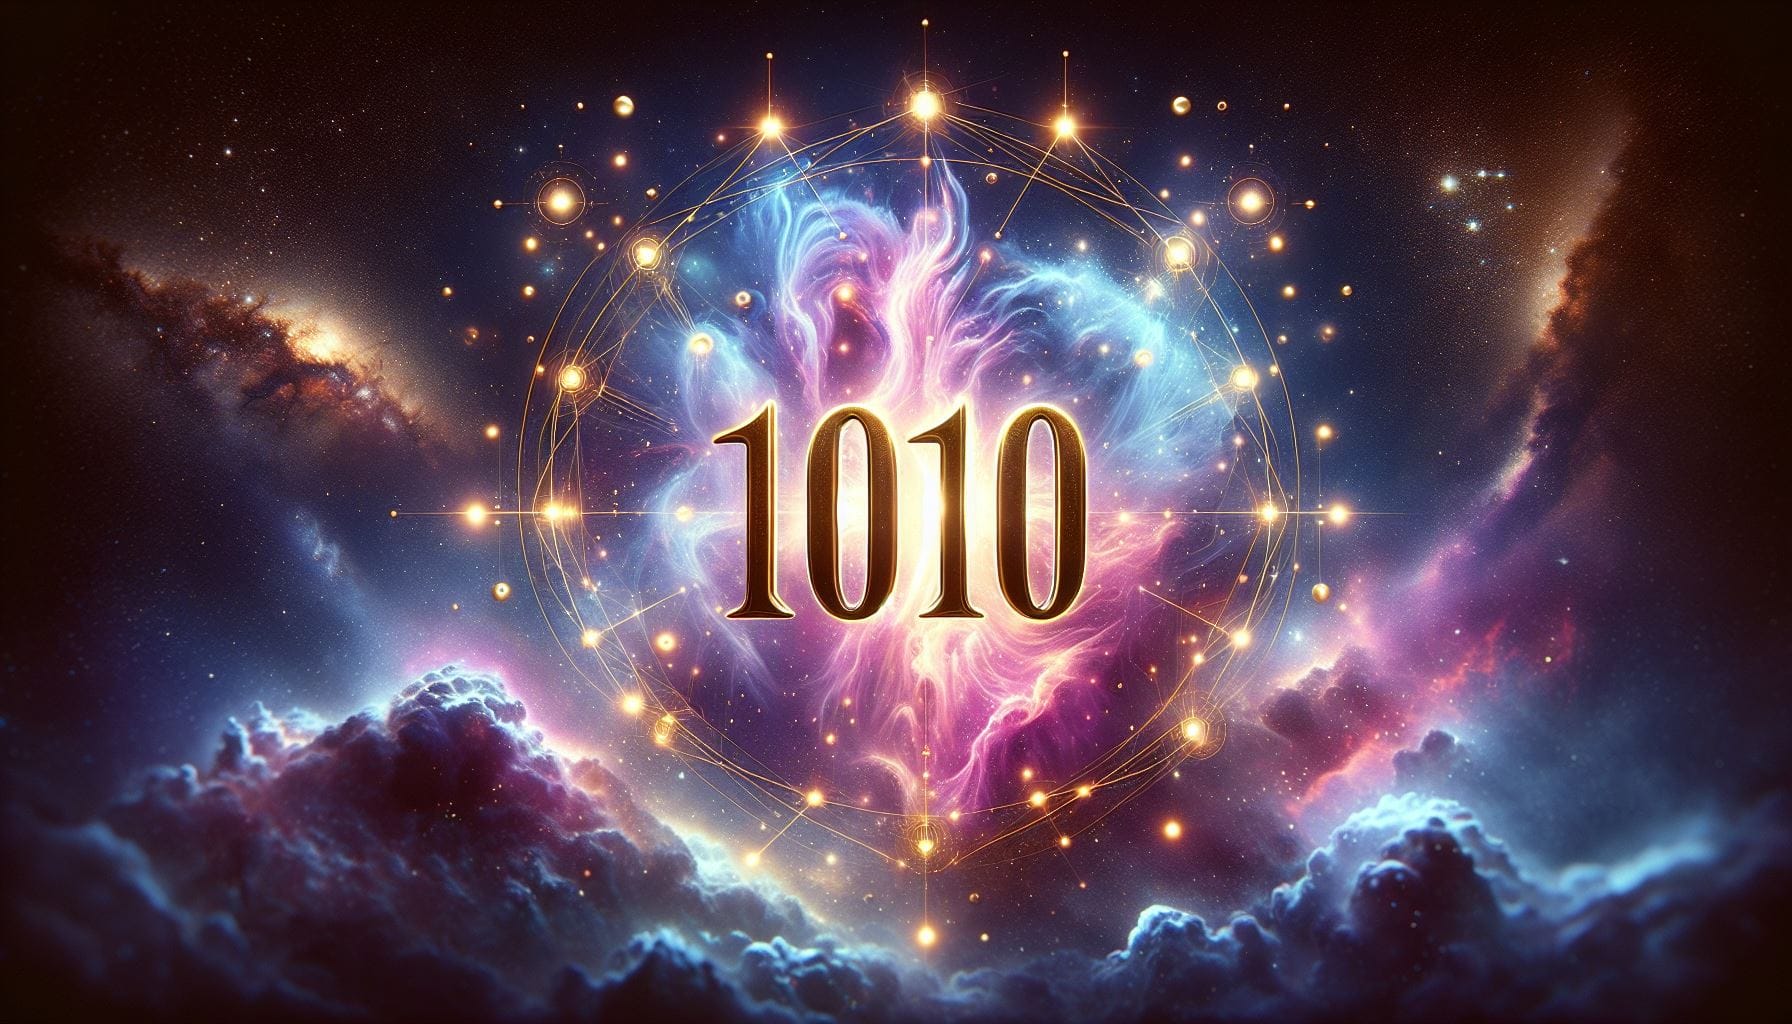 1010 significado espiritual